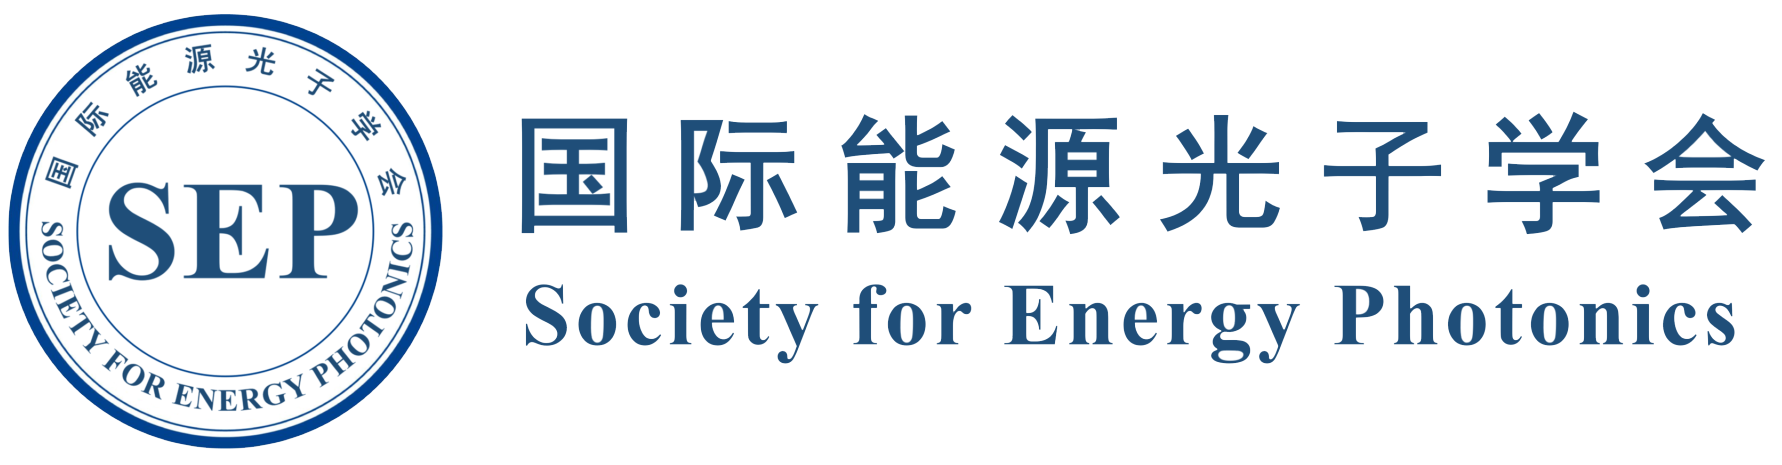 国际能源光子学会 透明logo 1782-465.png